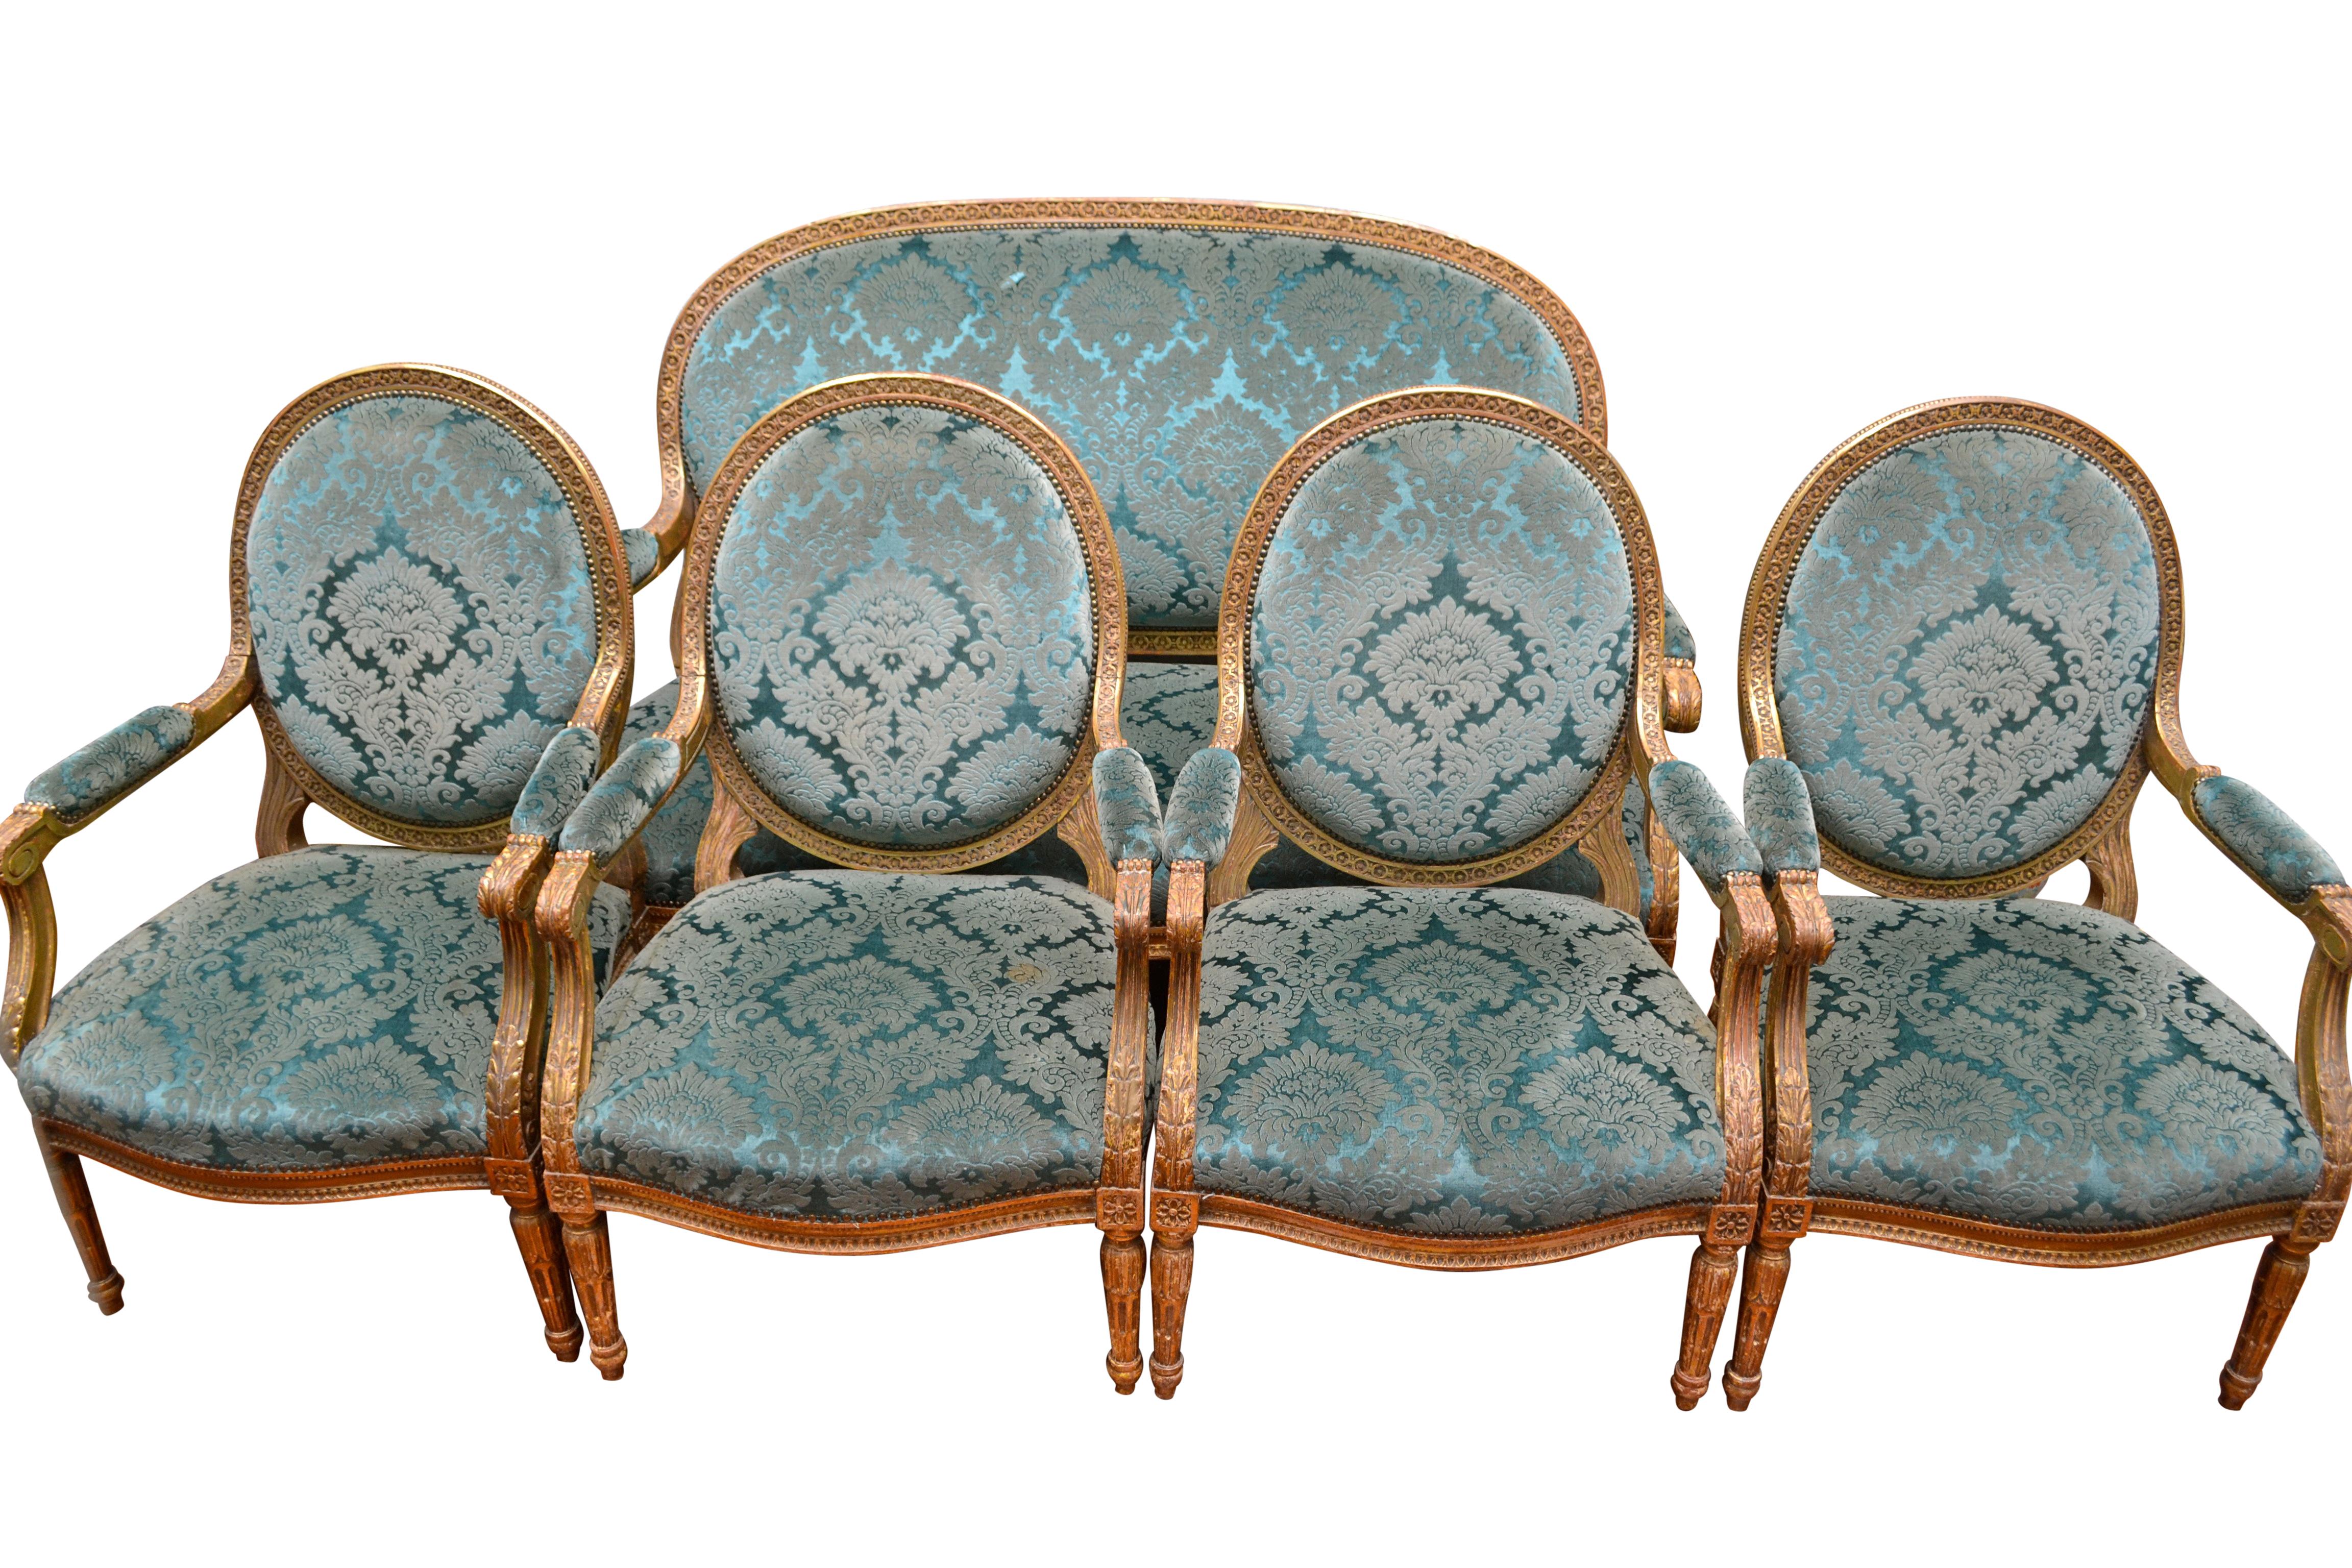 Palastartige Salongarnitur im Louis XVI-Stil, bestehend aus vier Sesseln und einem passenden Sofa. Die tief geschnitzten Rahmen sind mit Blattgold veredelt und mit antikem türkisfarbenem italienischem Seidensamt gepolstert, der ursprünglich als